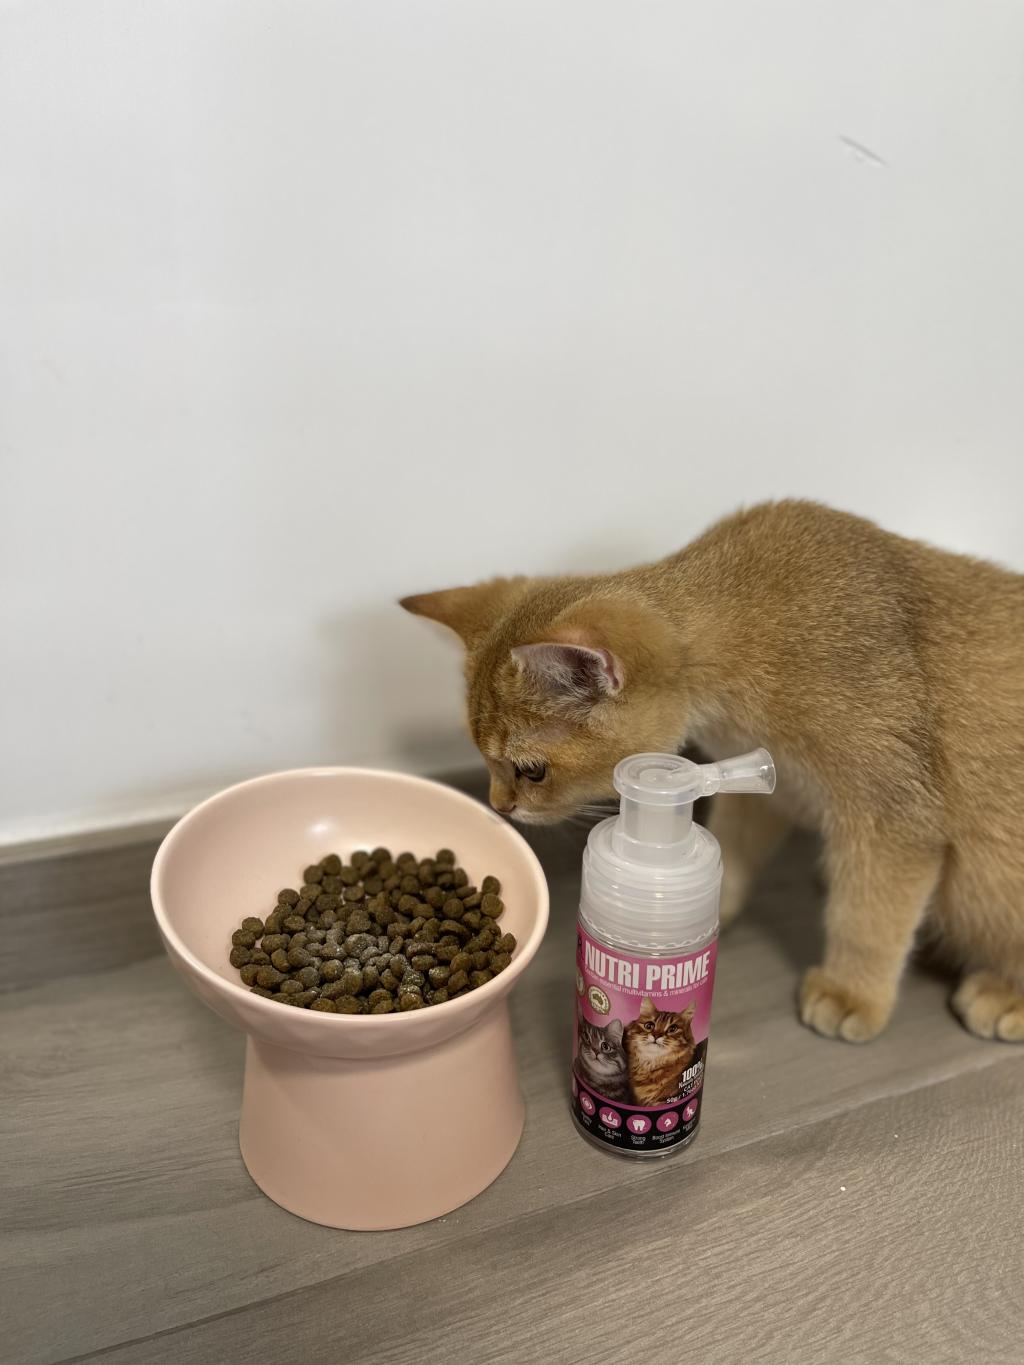 貓貓補營神仙粉 最方便又有豐富營養 #高質回圖